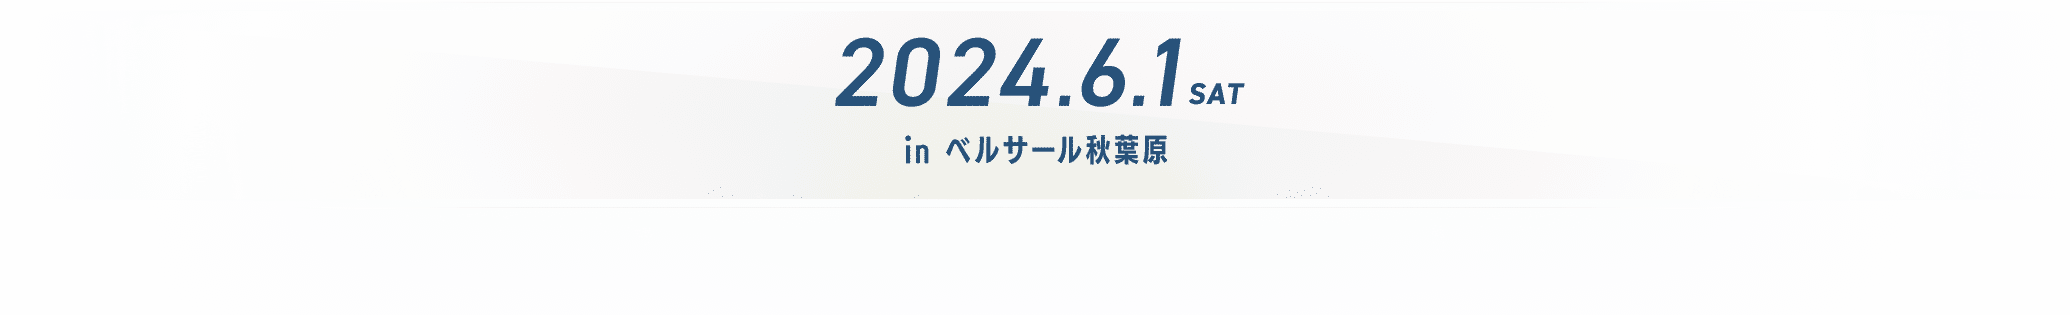 2024.6.1 (SAT) in ベルサール秋葉原